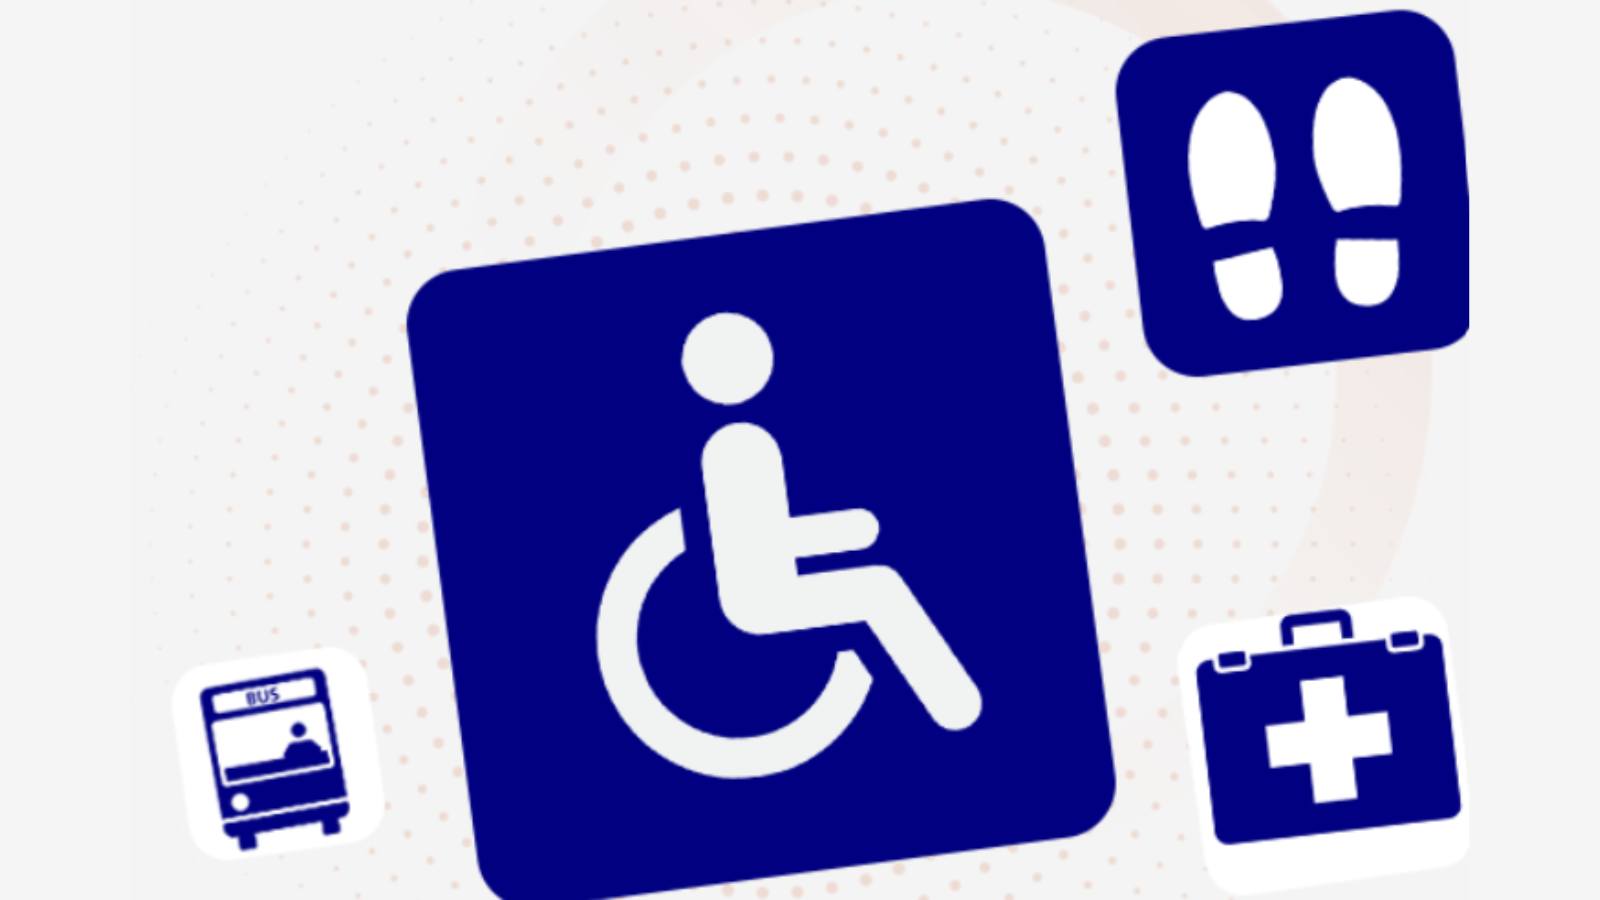 Imagen con varios de los pictogramas recogidos en la biblioteca digital creada por Plena Inclusión: un autobús, una persona en silla de ruedas, dos huellas de zapatos, un maletín sanitario con una cruz blanca